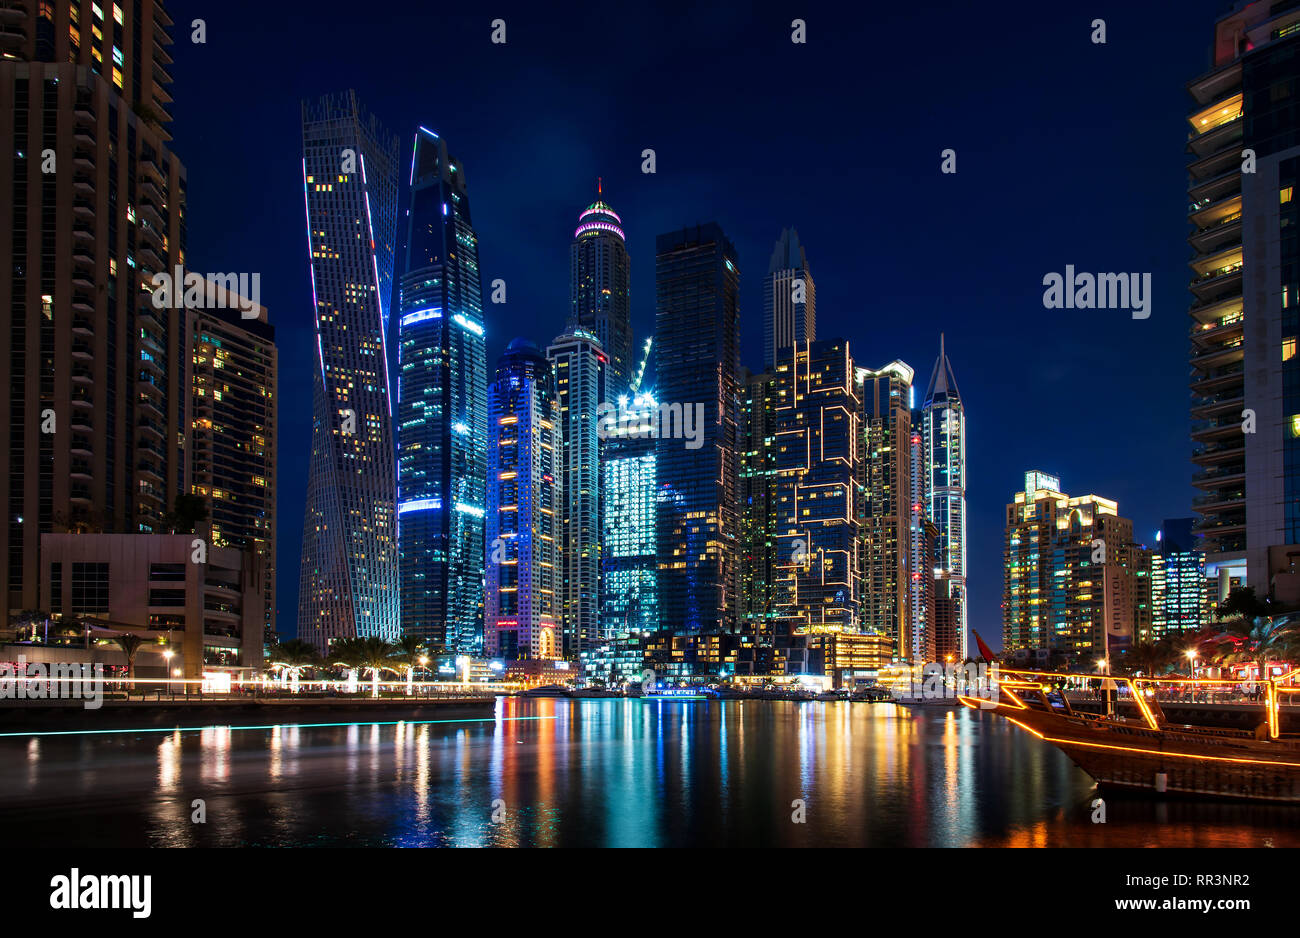 Dubai, Vereinigte Arabische Emirate - Februar 14, 2019: Dubai Marina moderne Szene von Wolkenkratzern und Luxus Yachten an der blauen Stunde Stockfoto